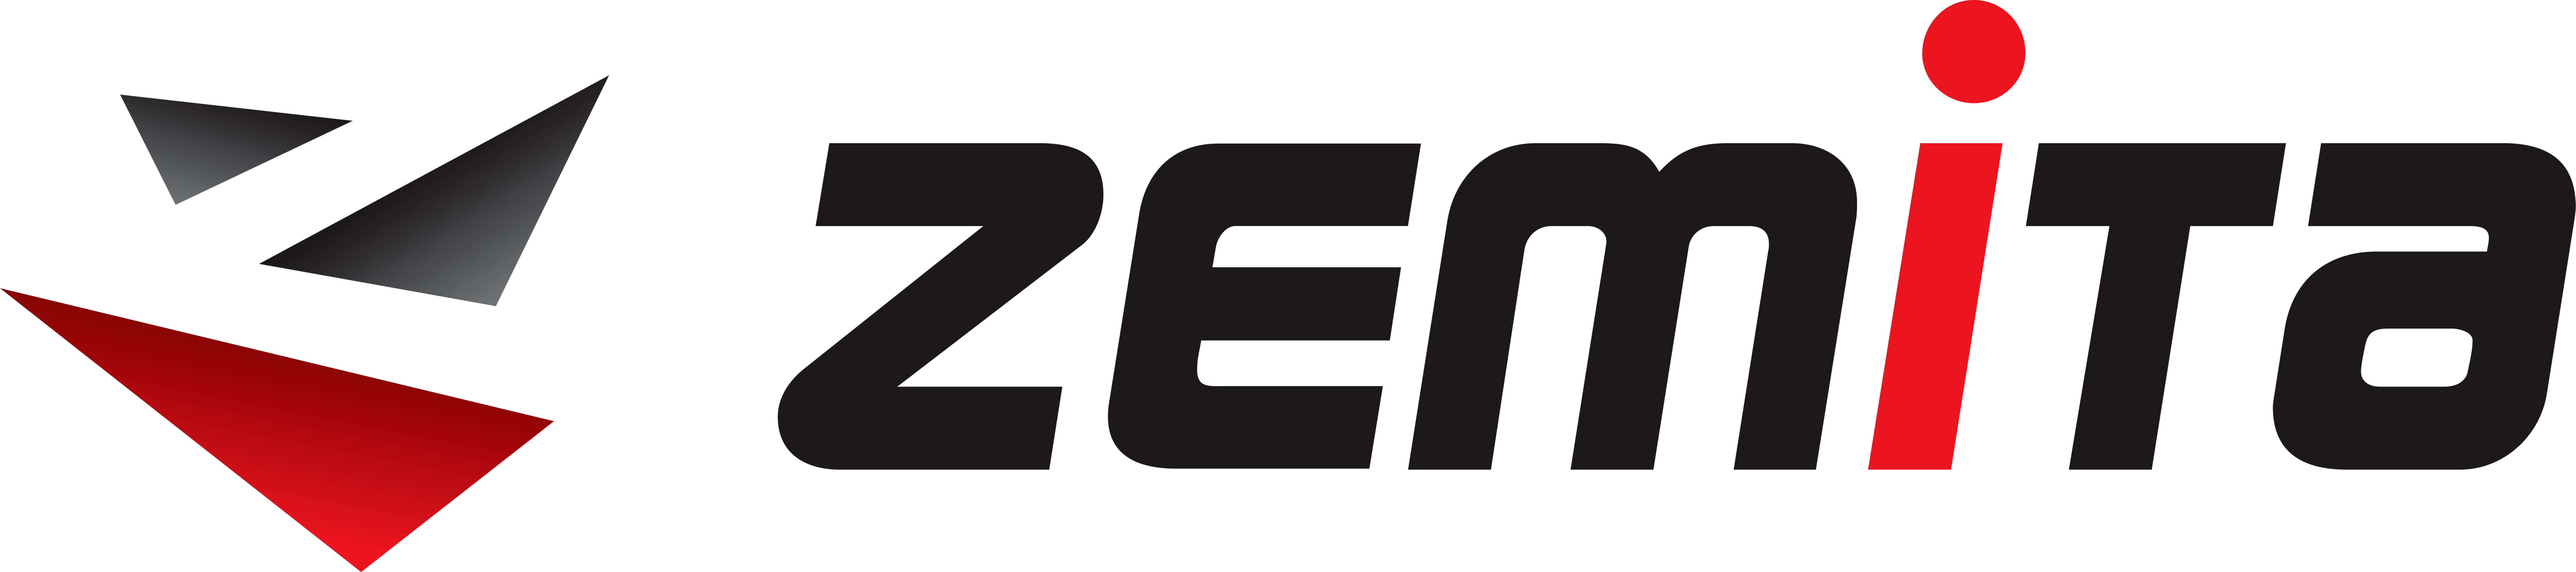 Zemita logo image